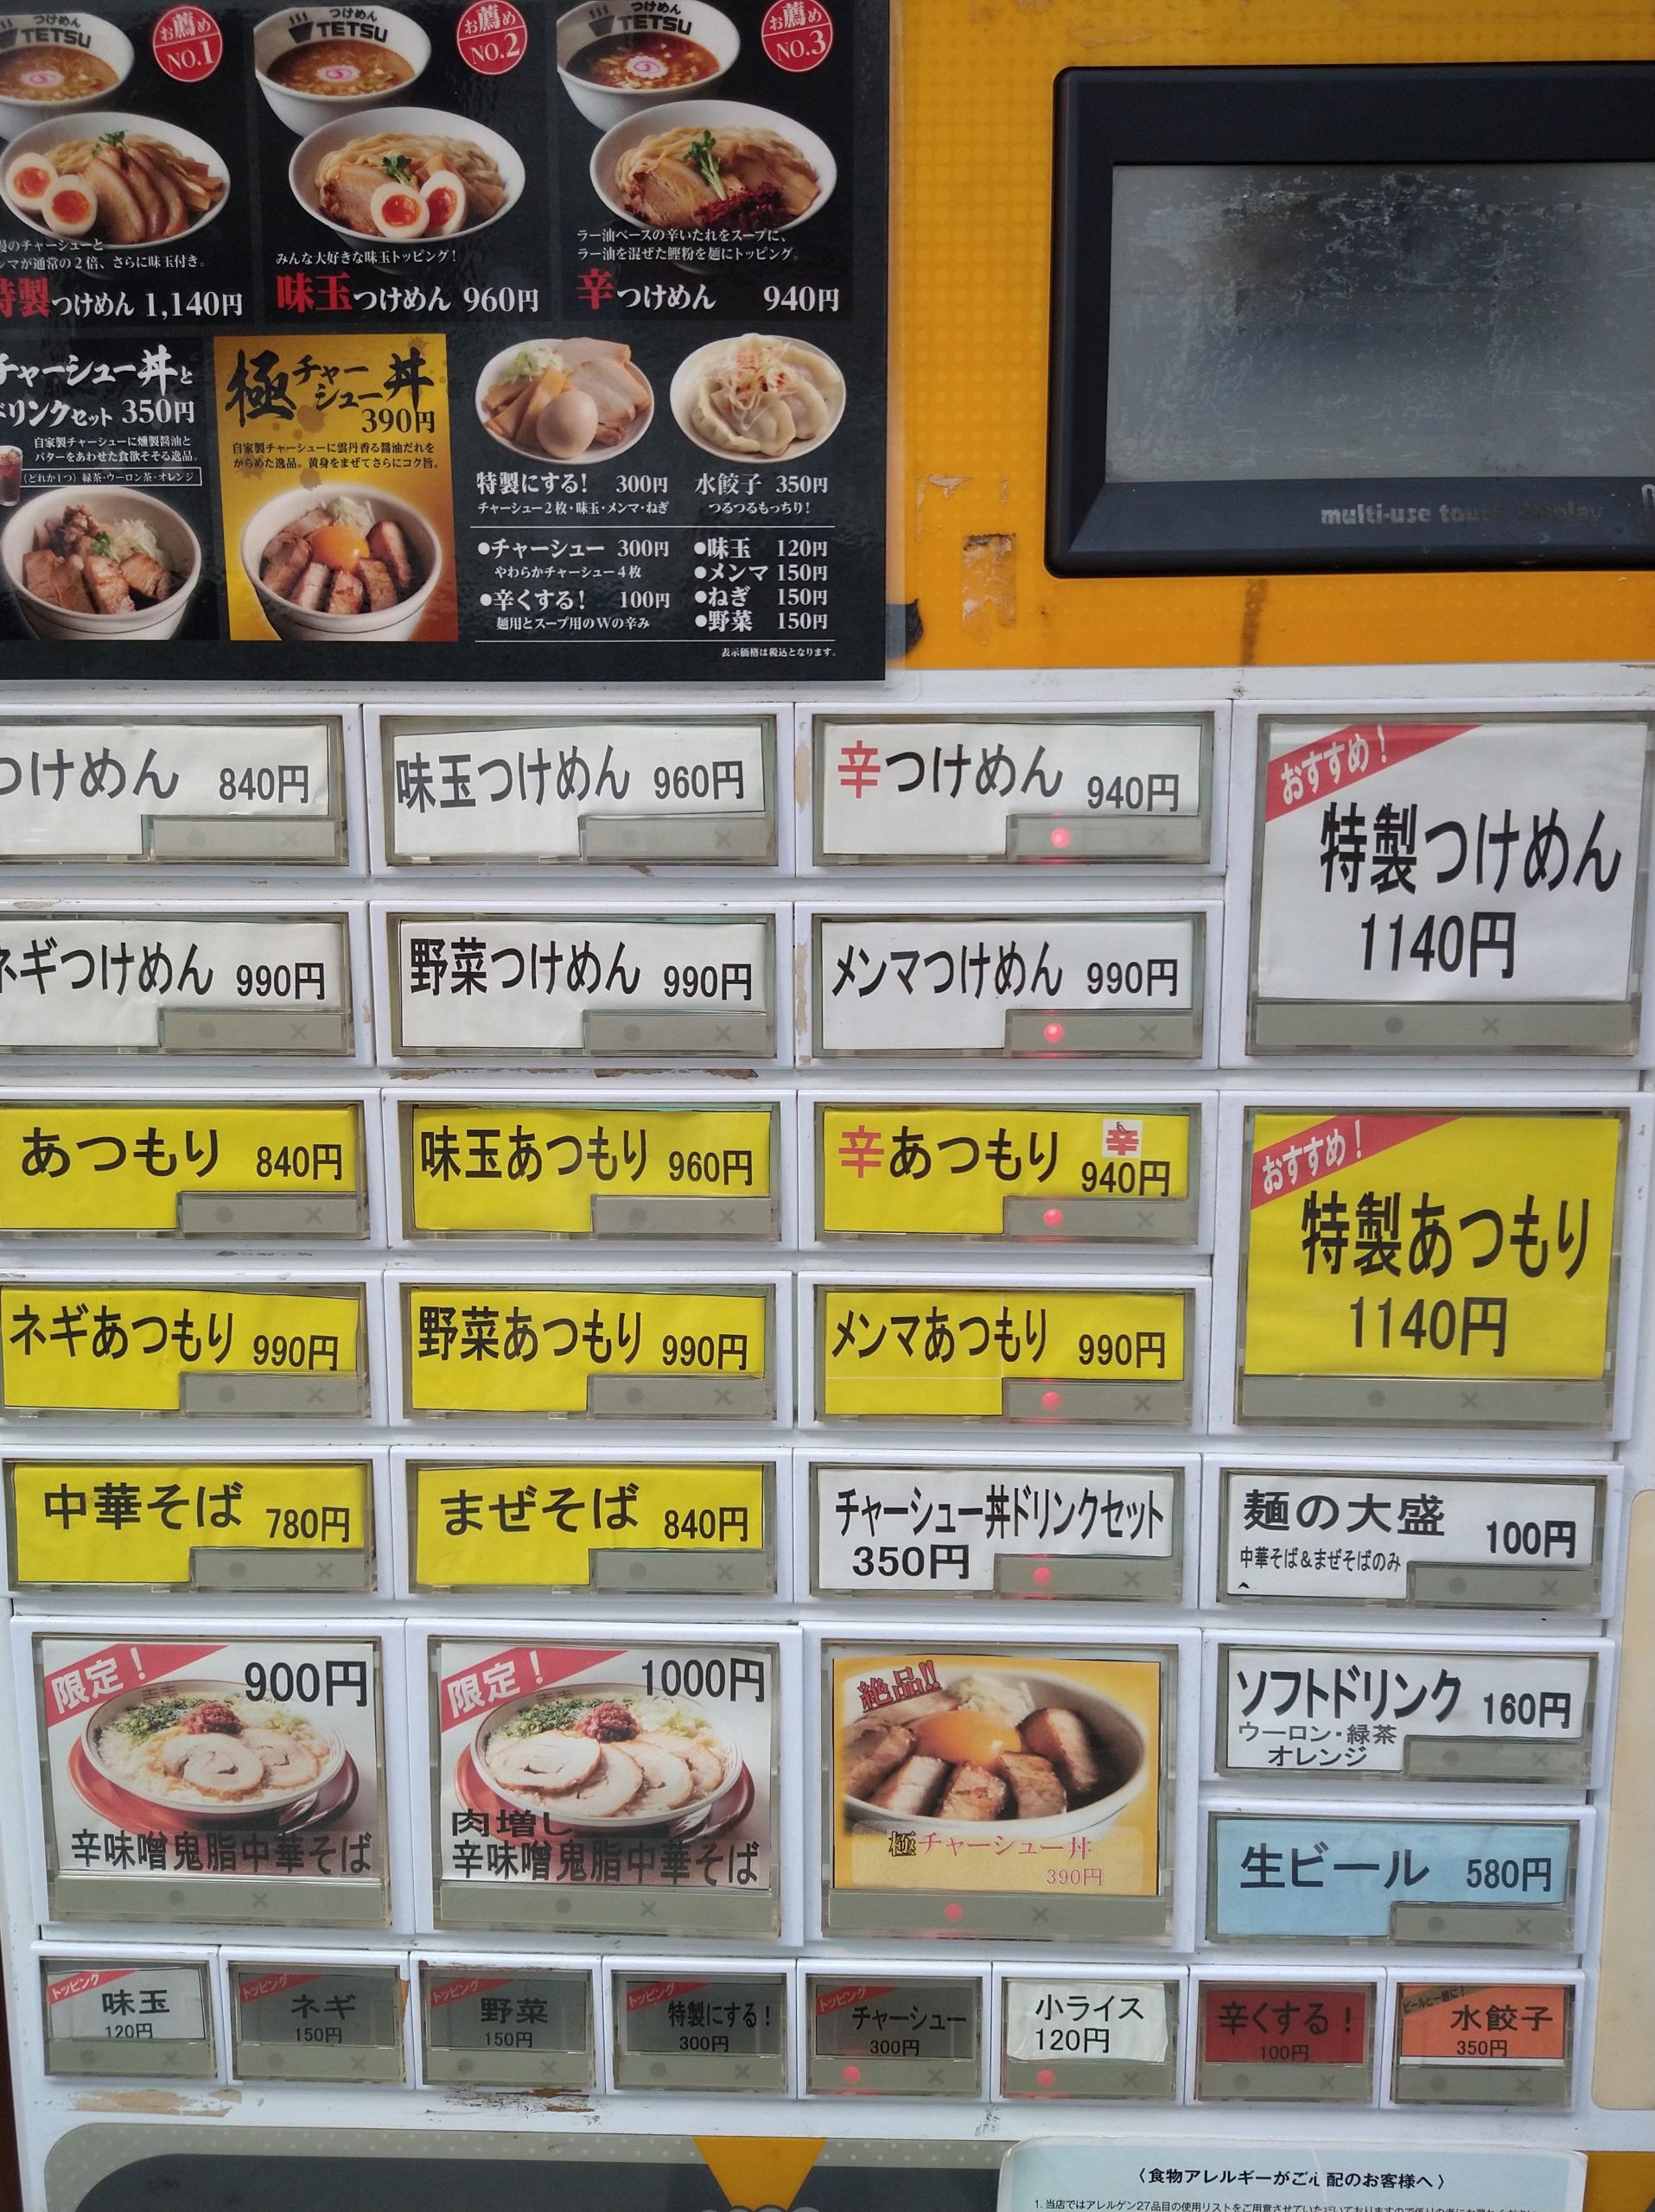 tsukemen-tetsu-menu-01